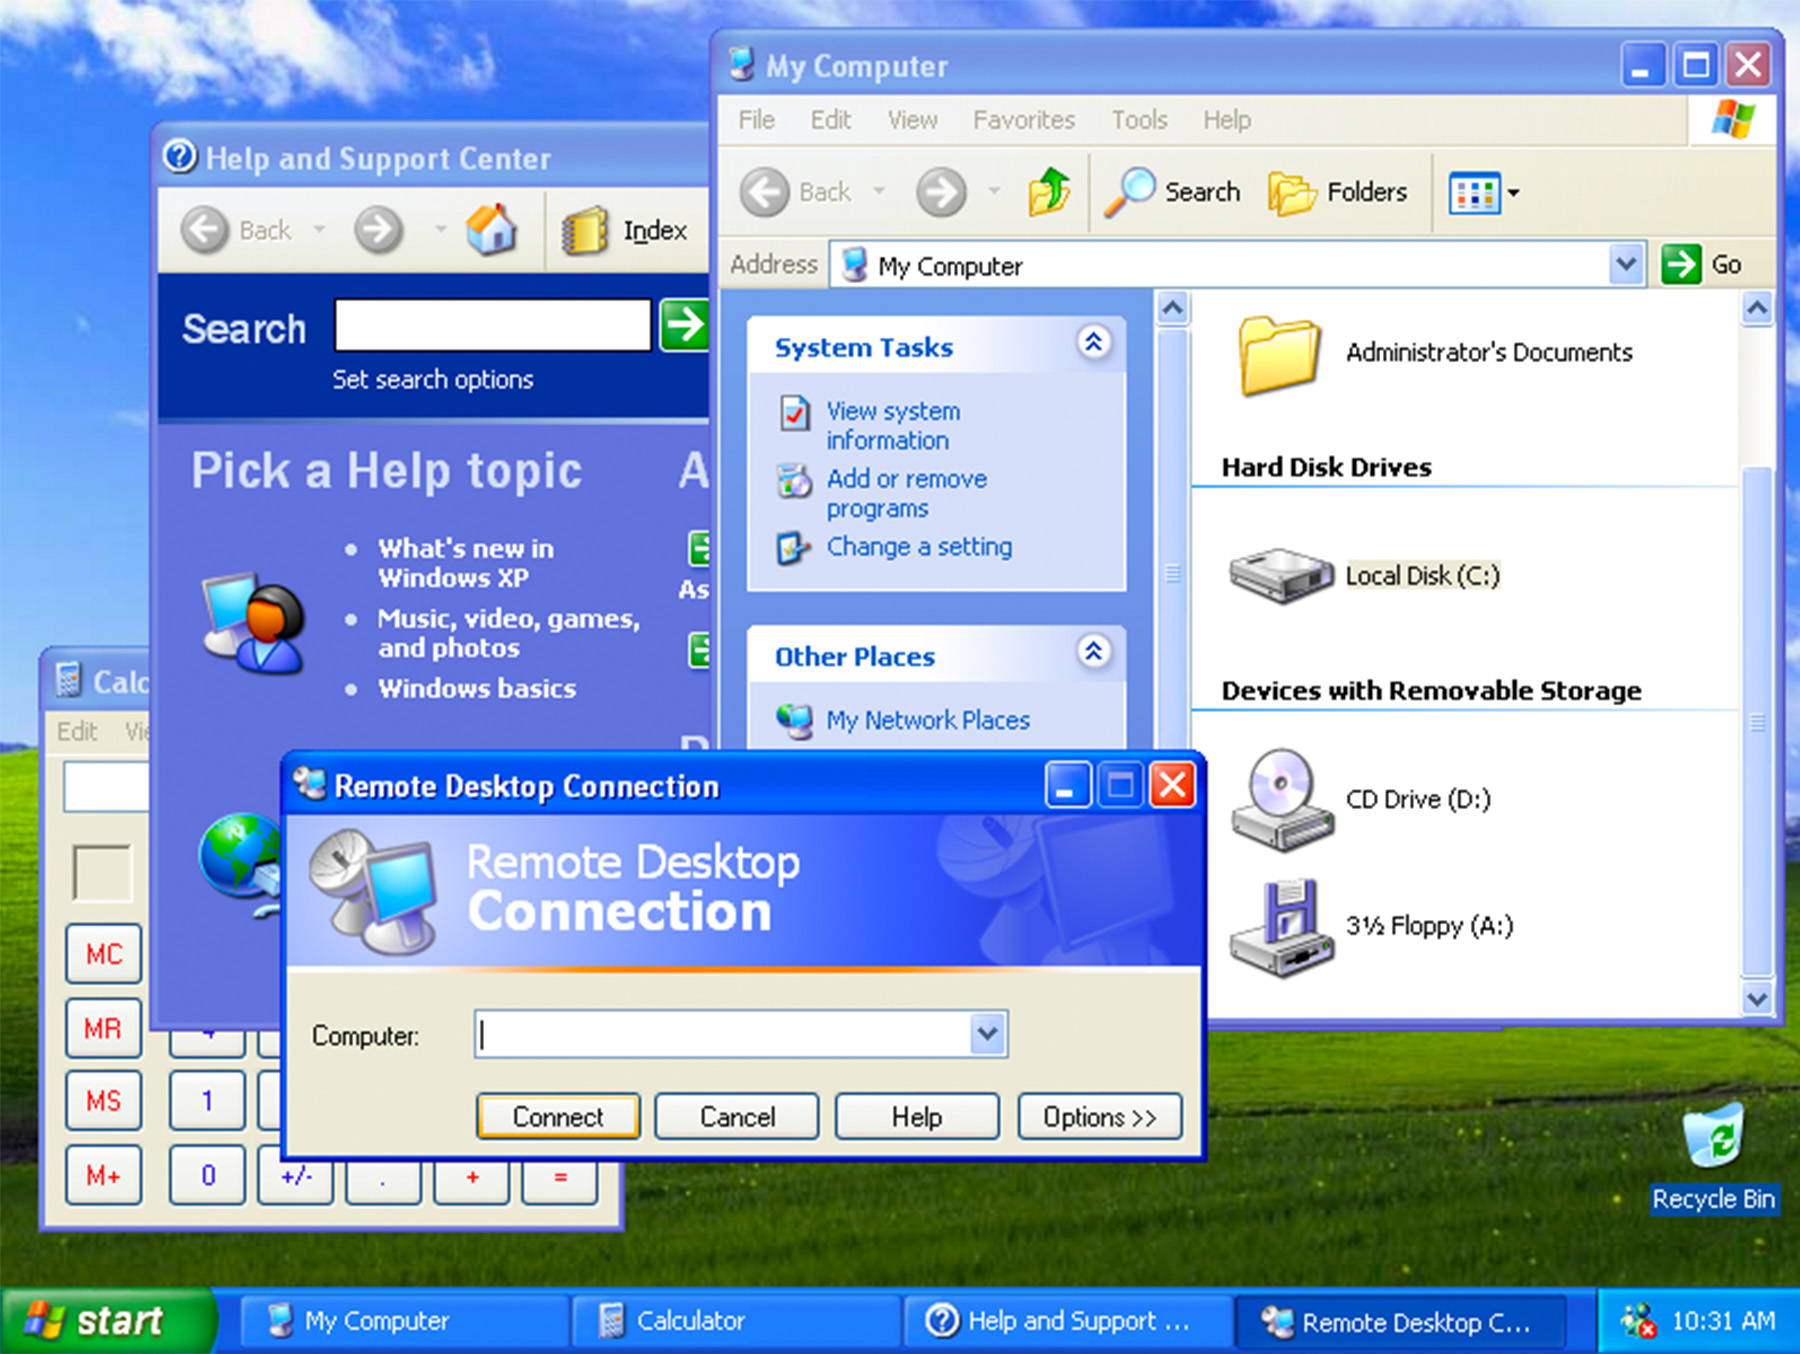 Windows XP Pro